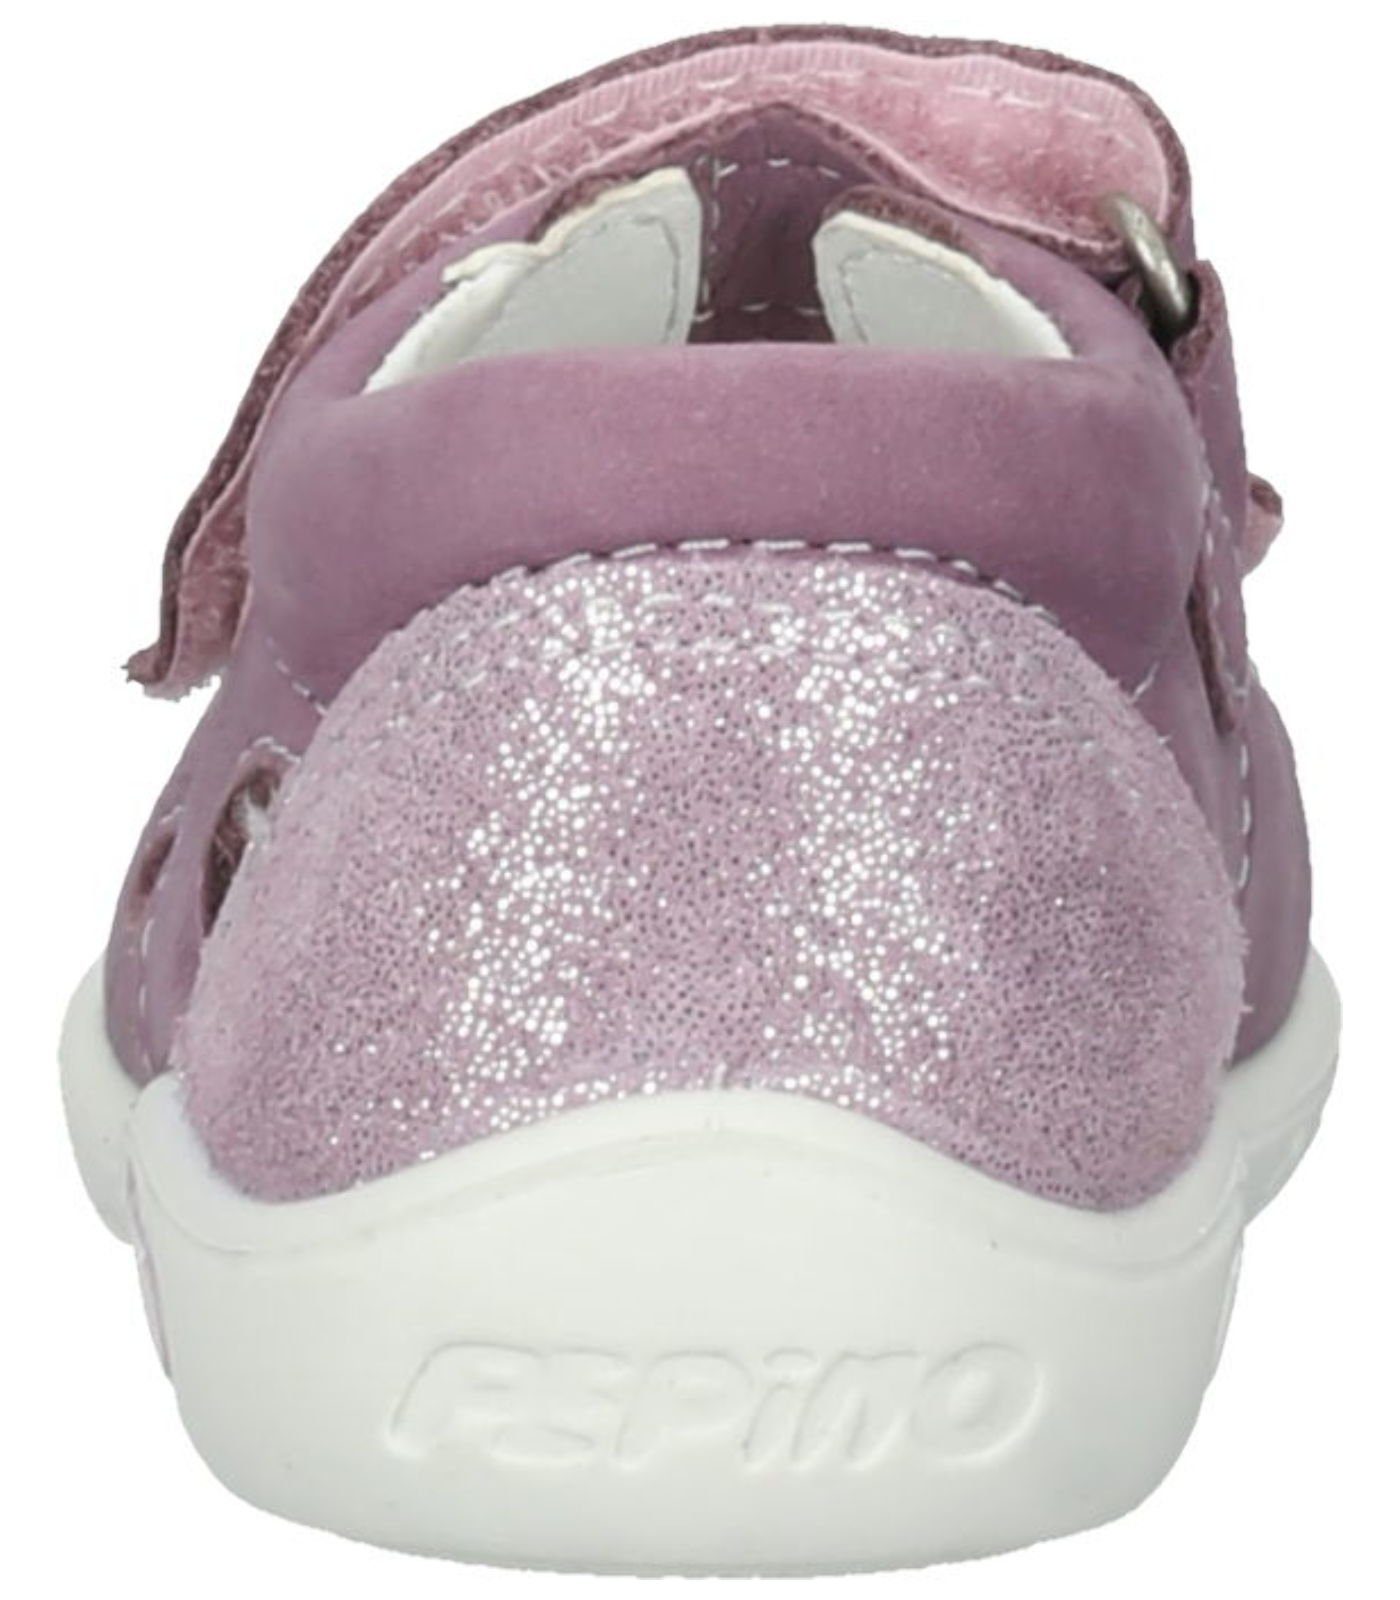 Riemchensandalette Pepino Leder Purple Sandalen